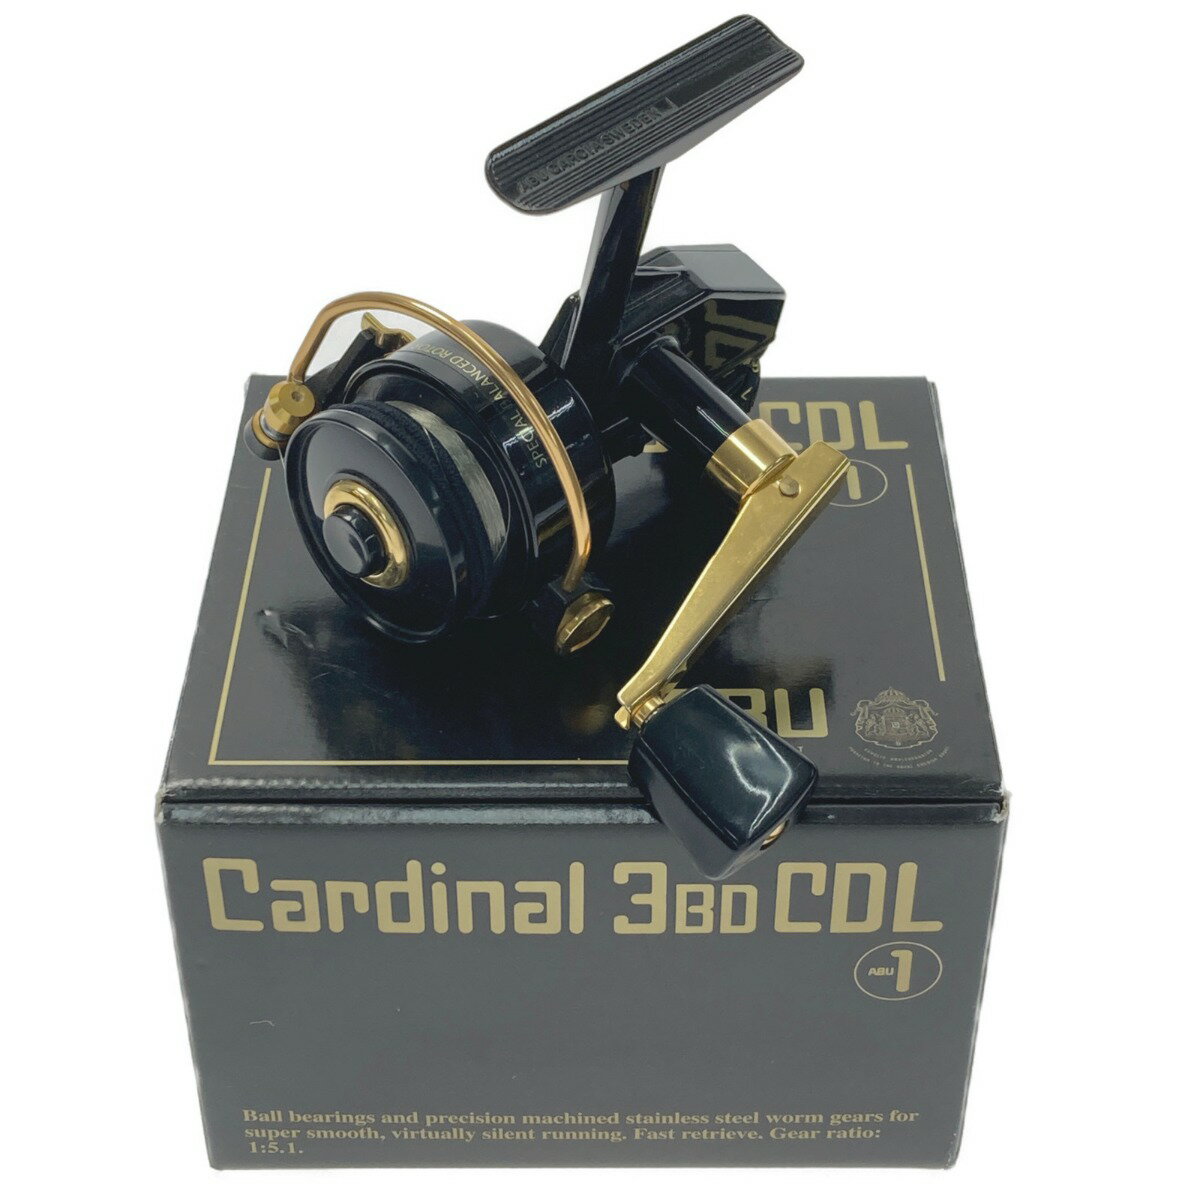 ☆☆【中古】ABU Cardinal カーディナル 3BD COL スピニングリール 箱付き Bランク